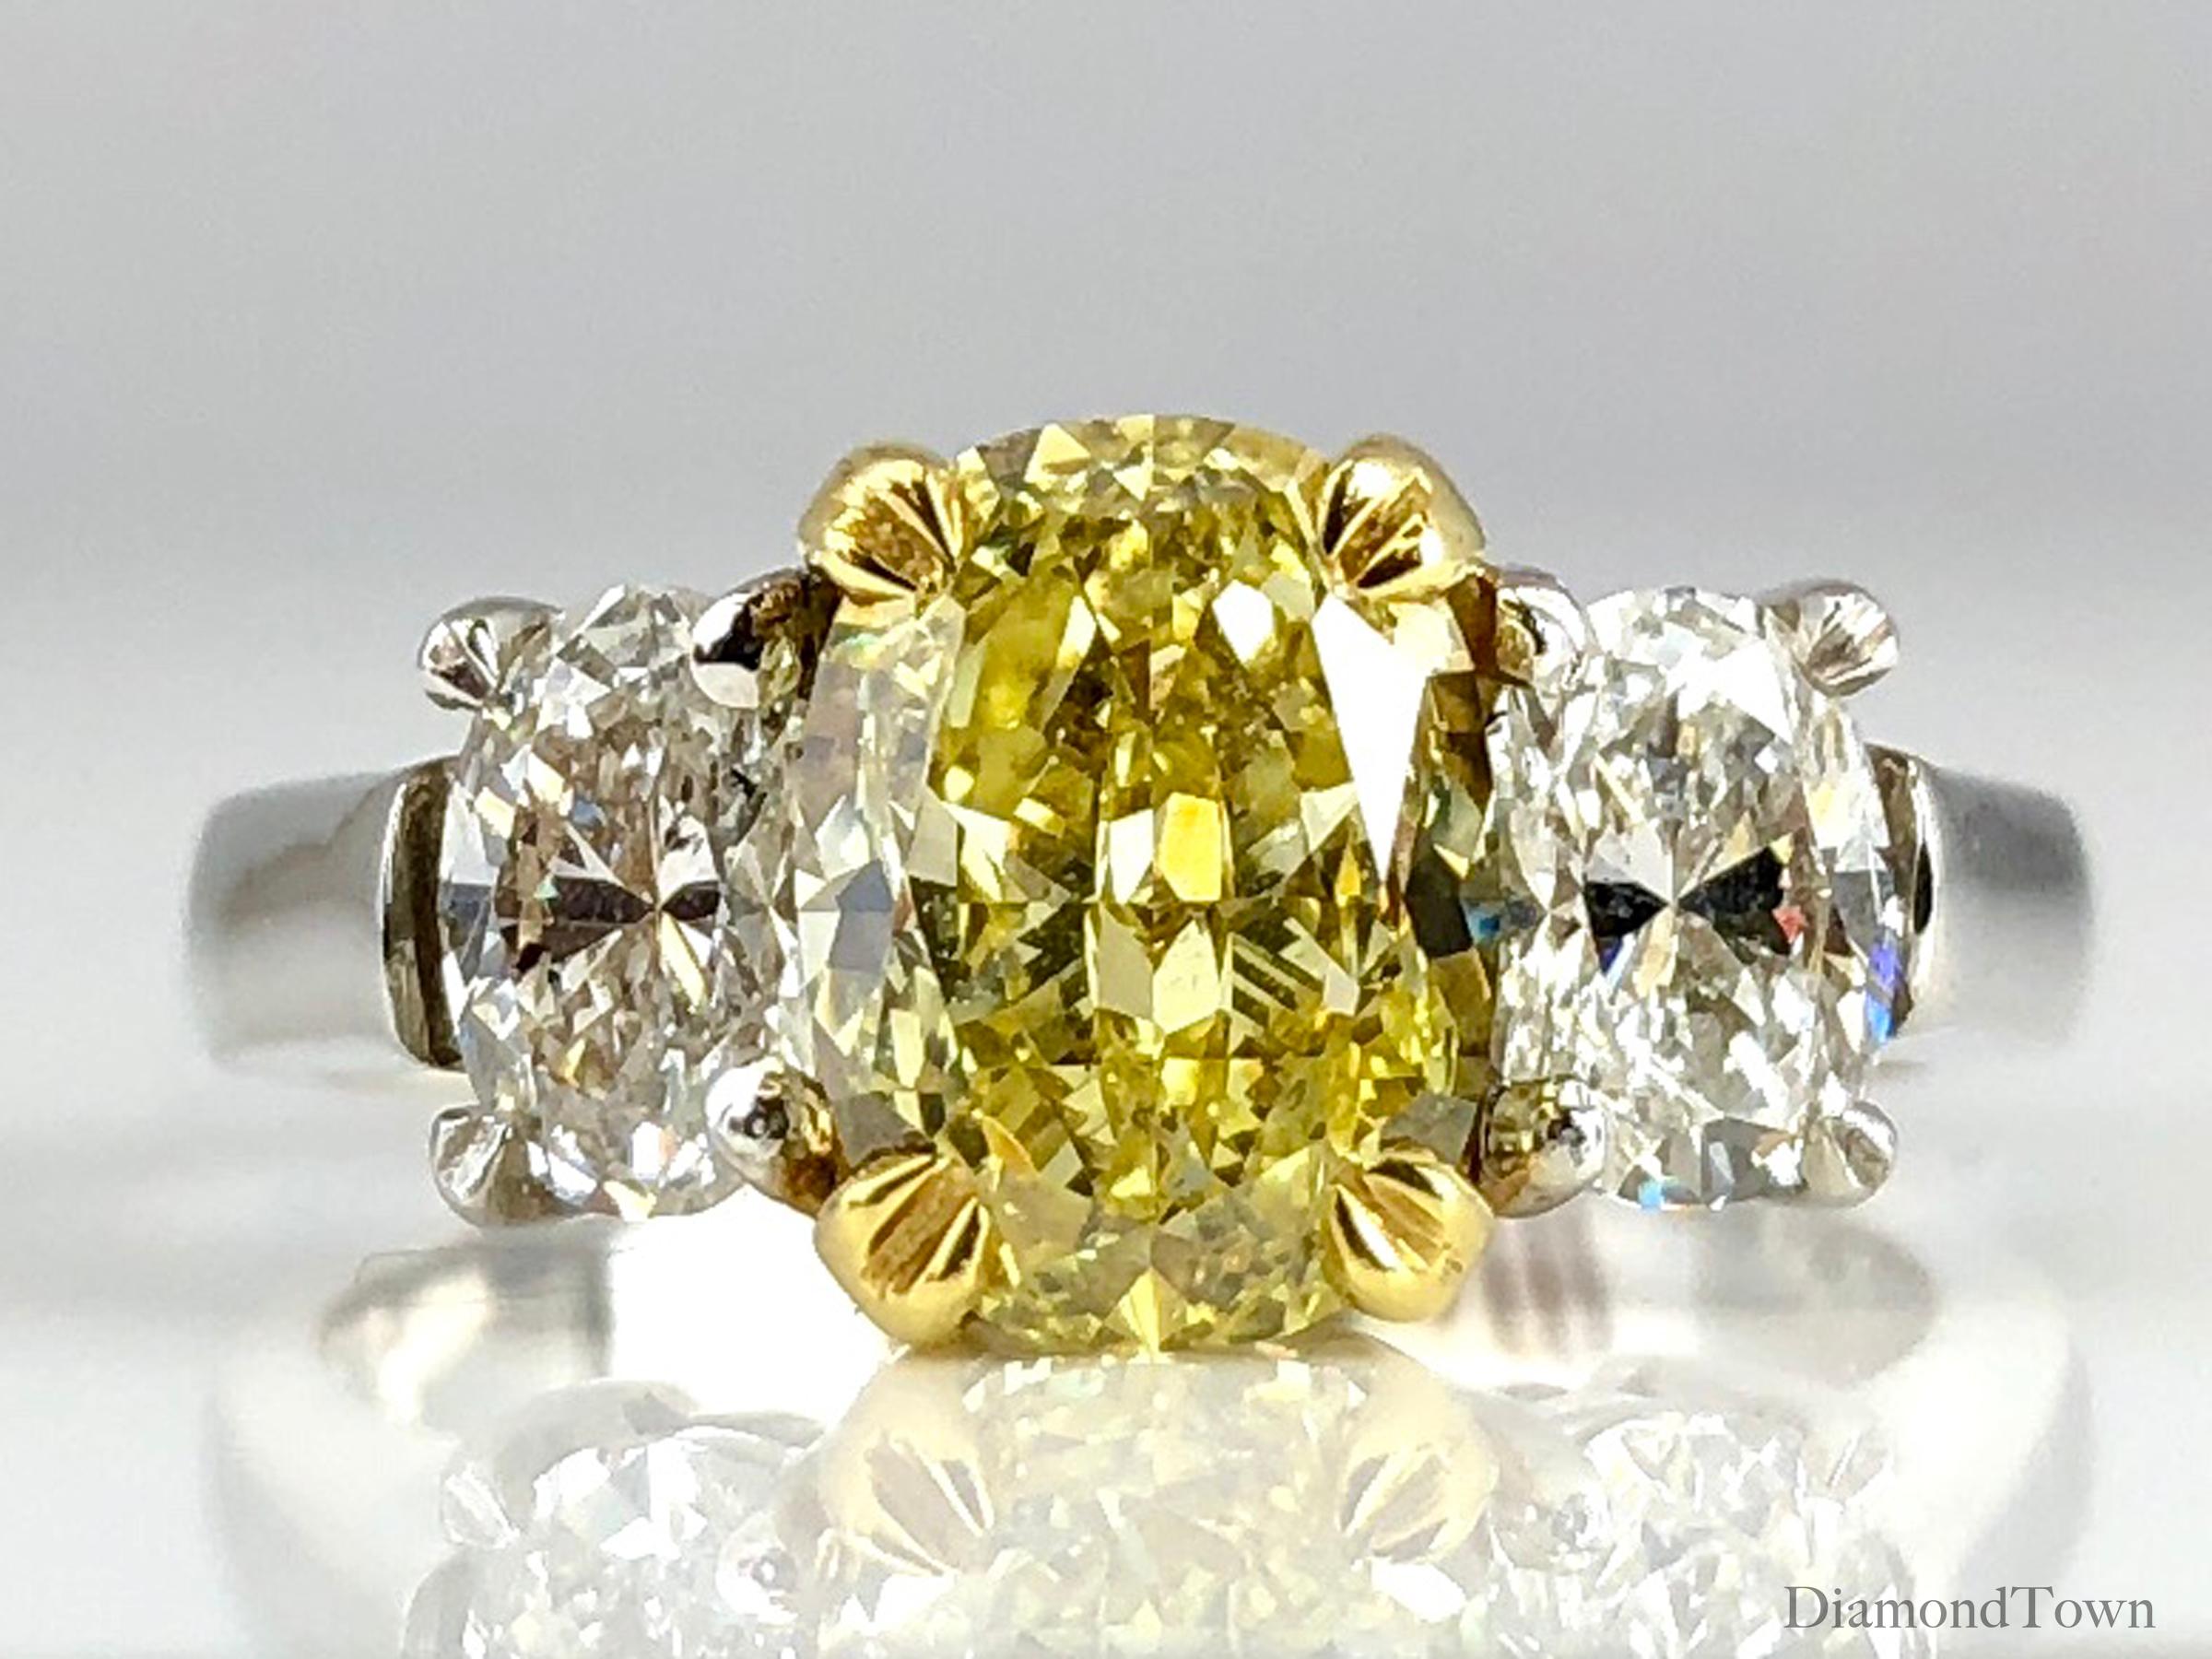 Gönnen Sie sich Luxus und Raffinesse mit diesem atemberaubenden Ring, der Eleganz und Anmut verkörpert. Sein Herzstück ist ein schillernder, GIA-zertifizierter 2,01-Karat-Diamant im natürlichen Fancy Intense Yellow Oval Cut, der eine